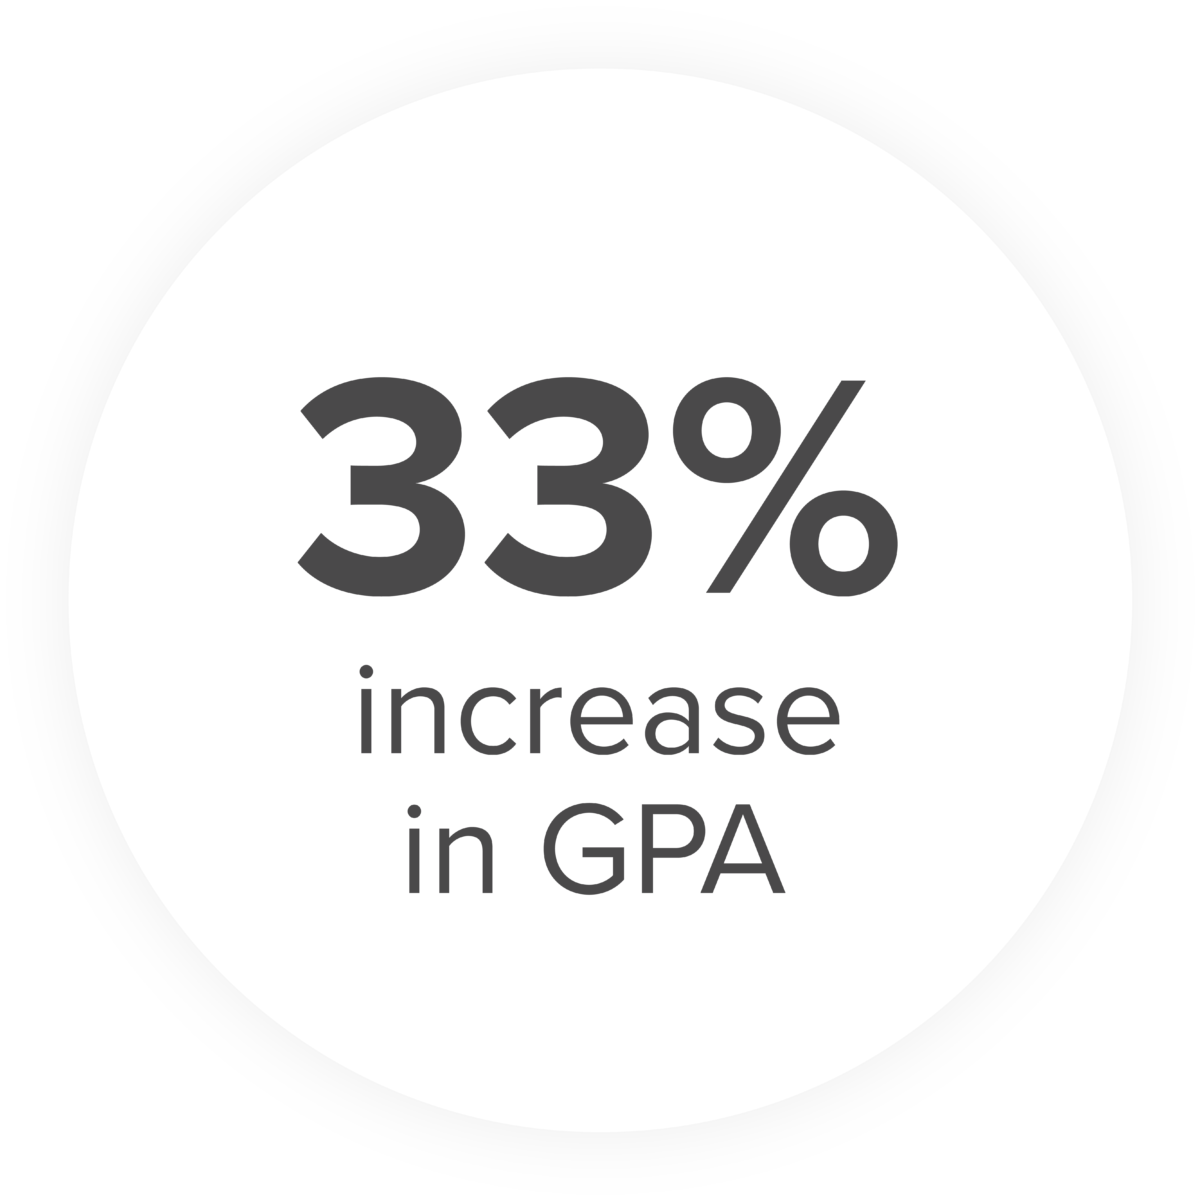 33% increase in GPA image